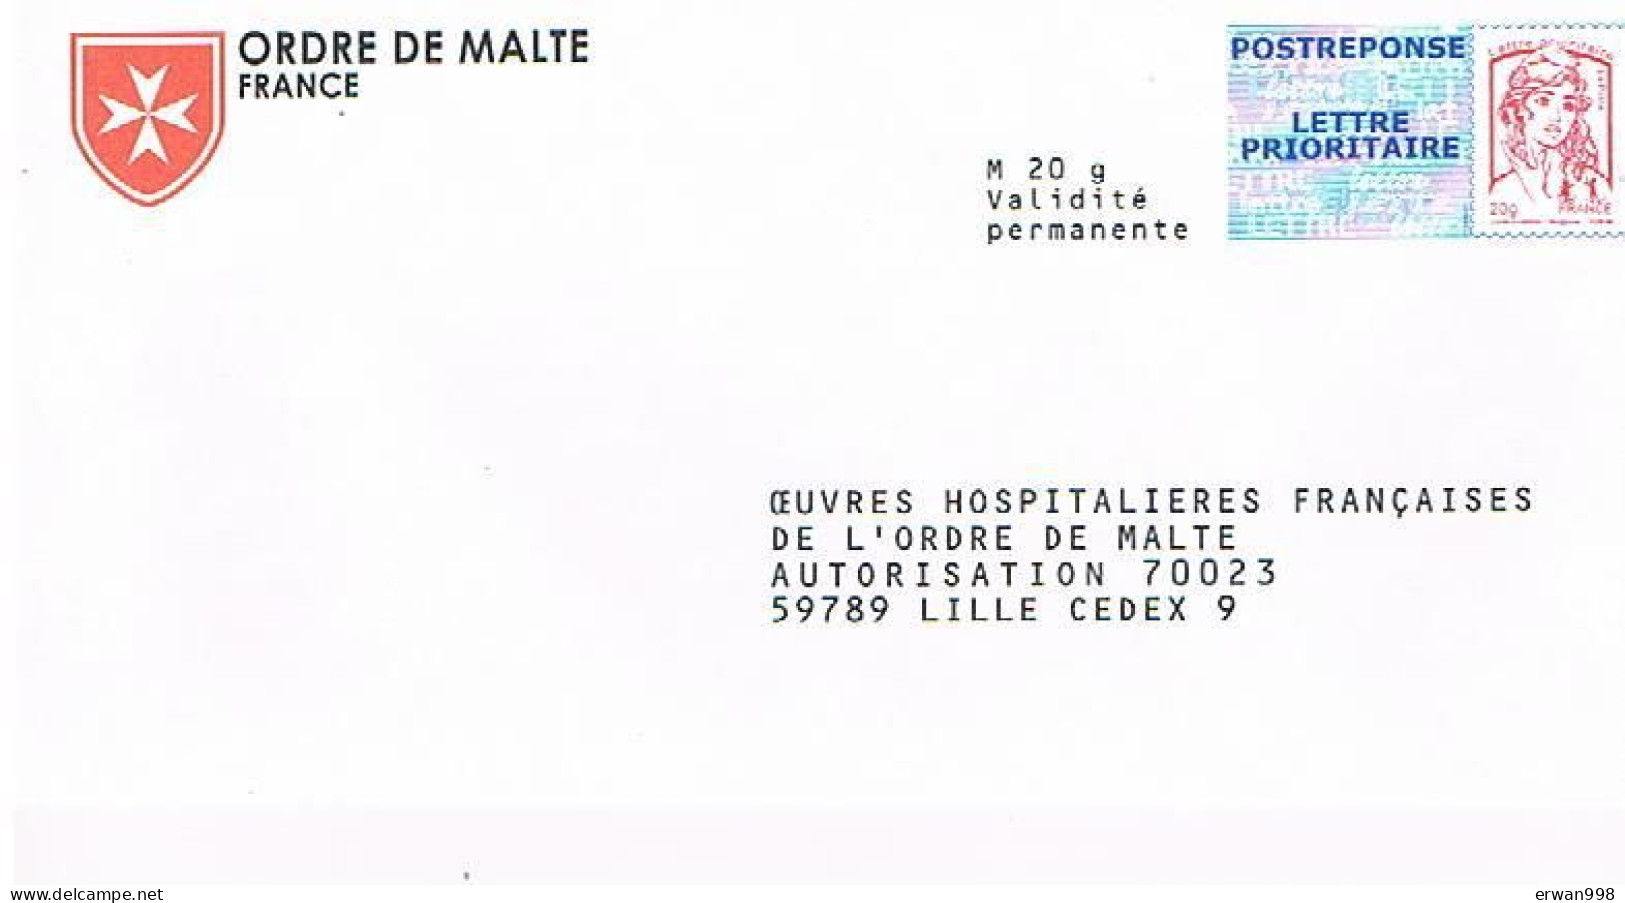 59 LILLE PAP 2 Postréponses Marianne Jeunesse  Ciappa-Kavena 15P164 & 14P281 Oeuvres Ordre De Malte  300 - Prêts-à-poster: Réponse /Ciappa-Kavena